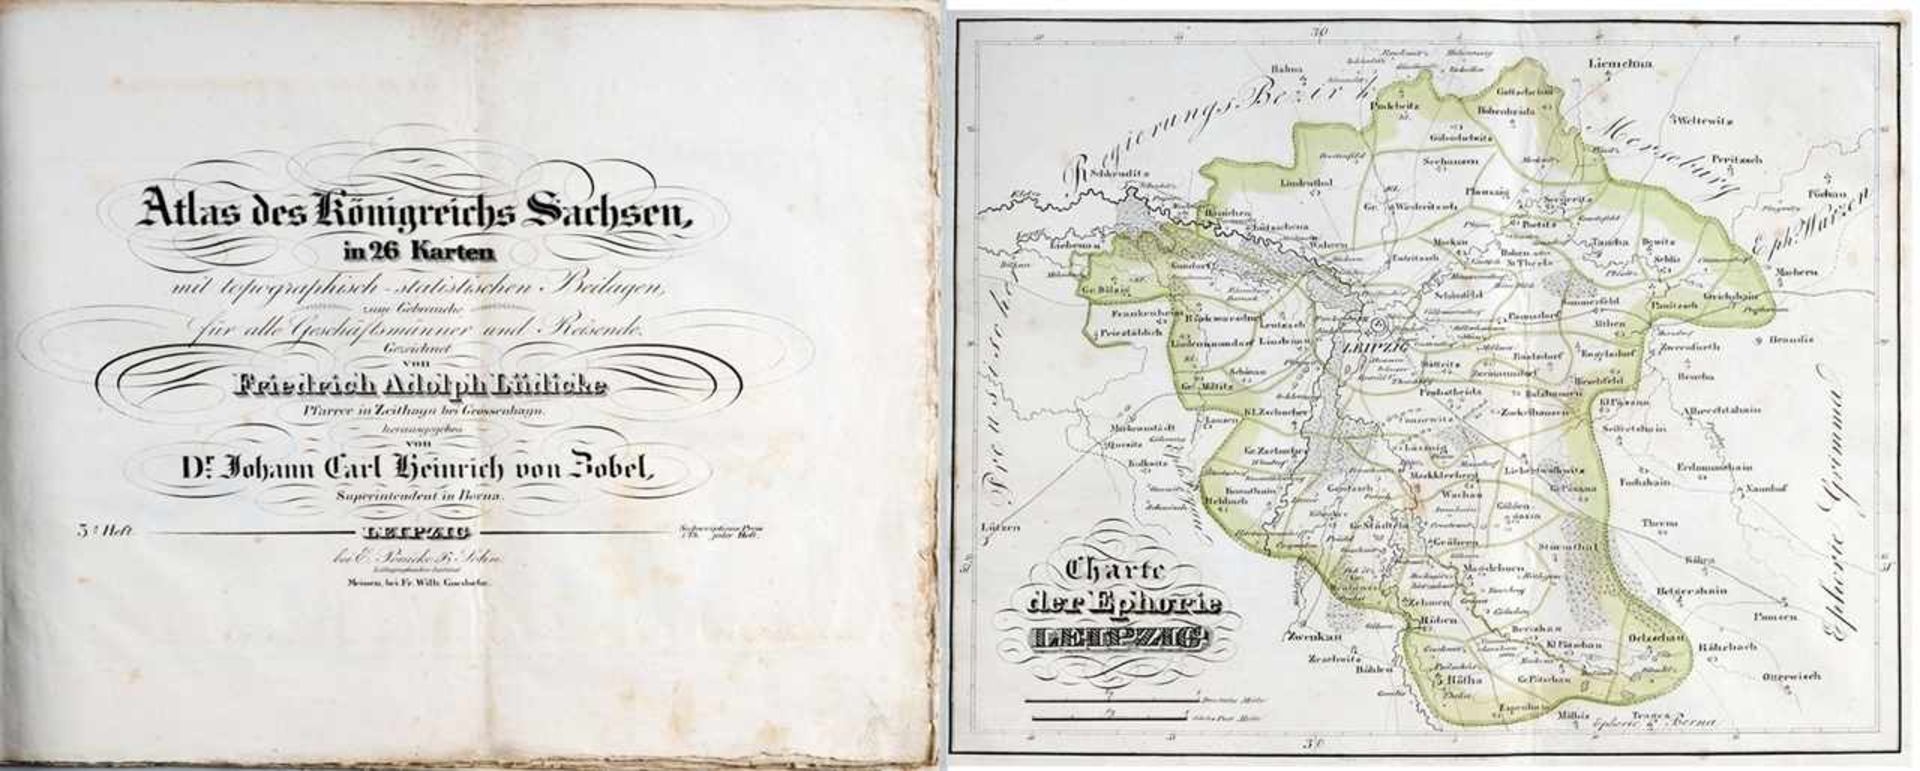 "Atlas des Königreichs Sachsen in 26 Karten.." "..mit topographisch-statistischen Beilagen zum